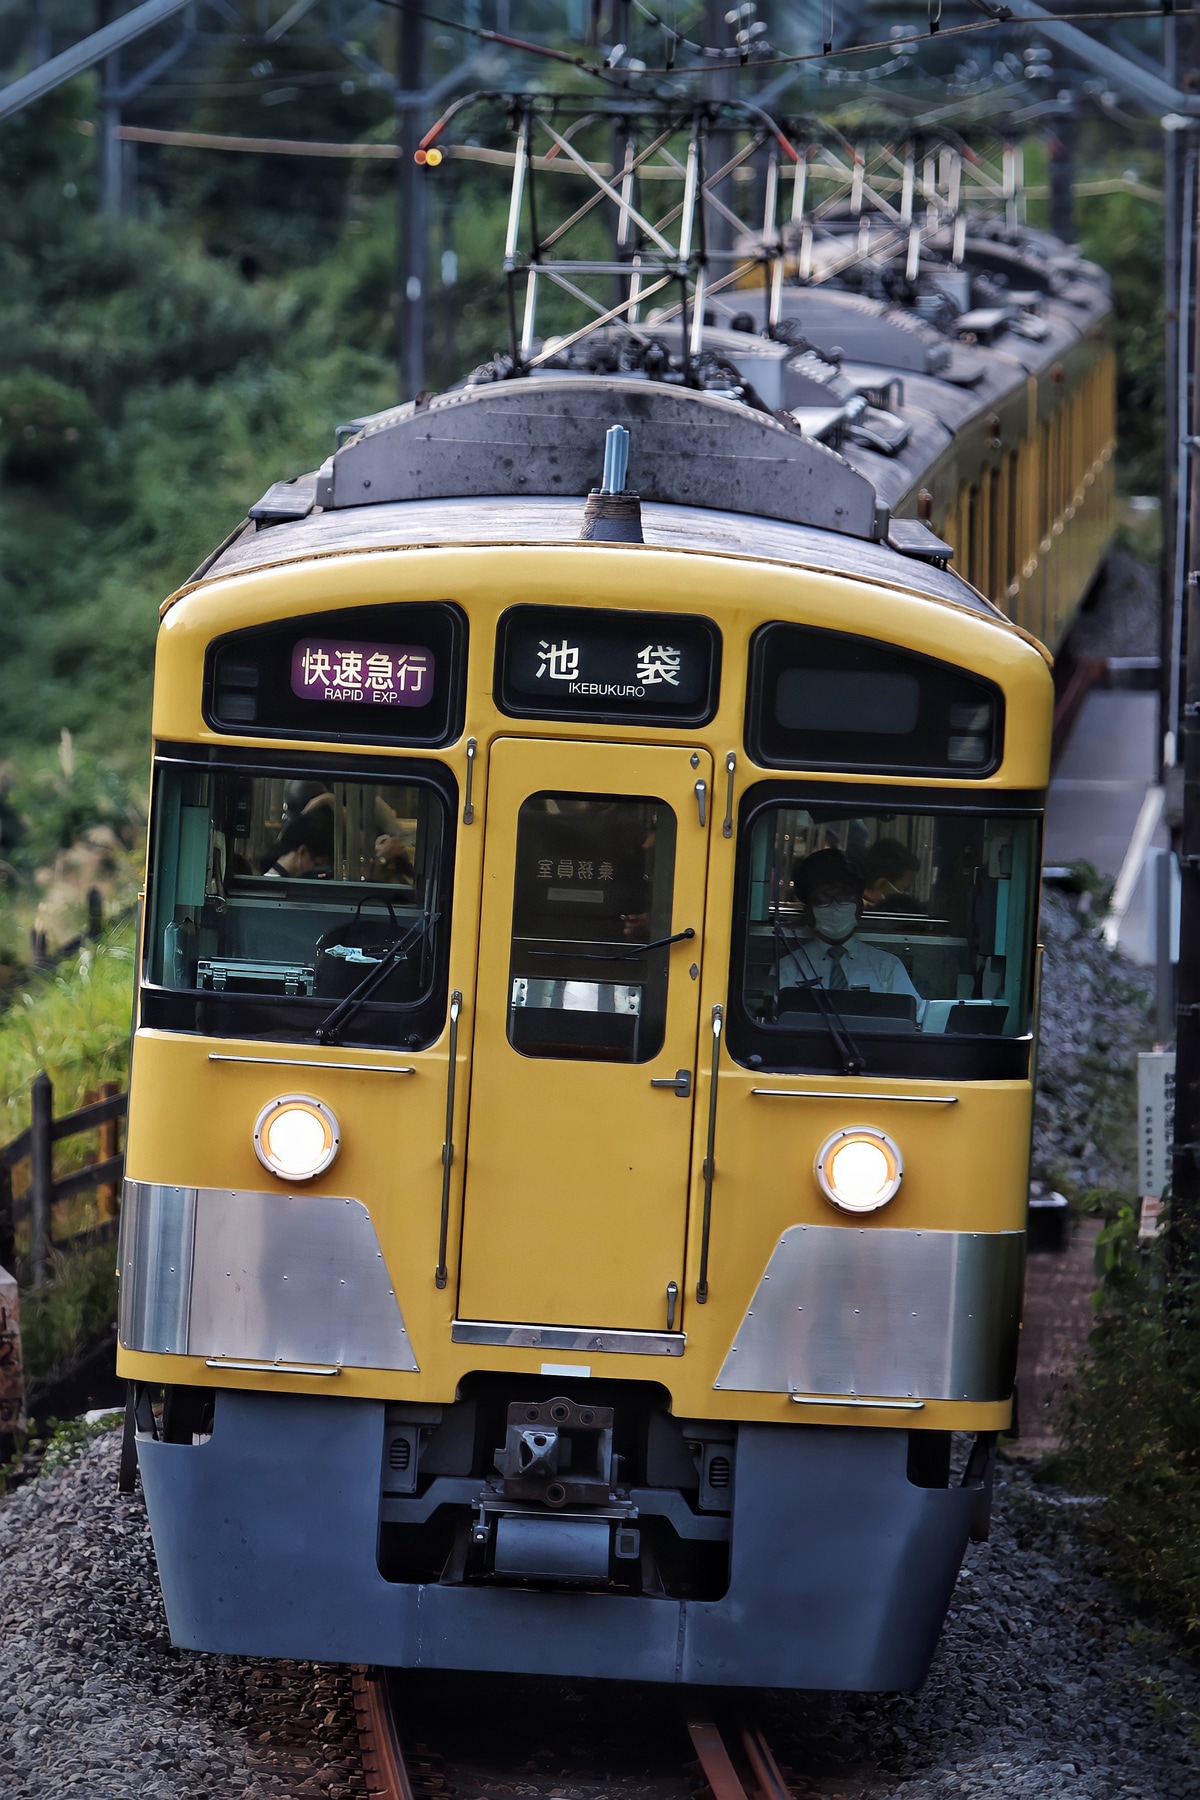 西武鉄道 武蔵丘車両管理所 新2000系 2063F